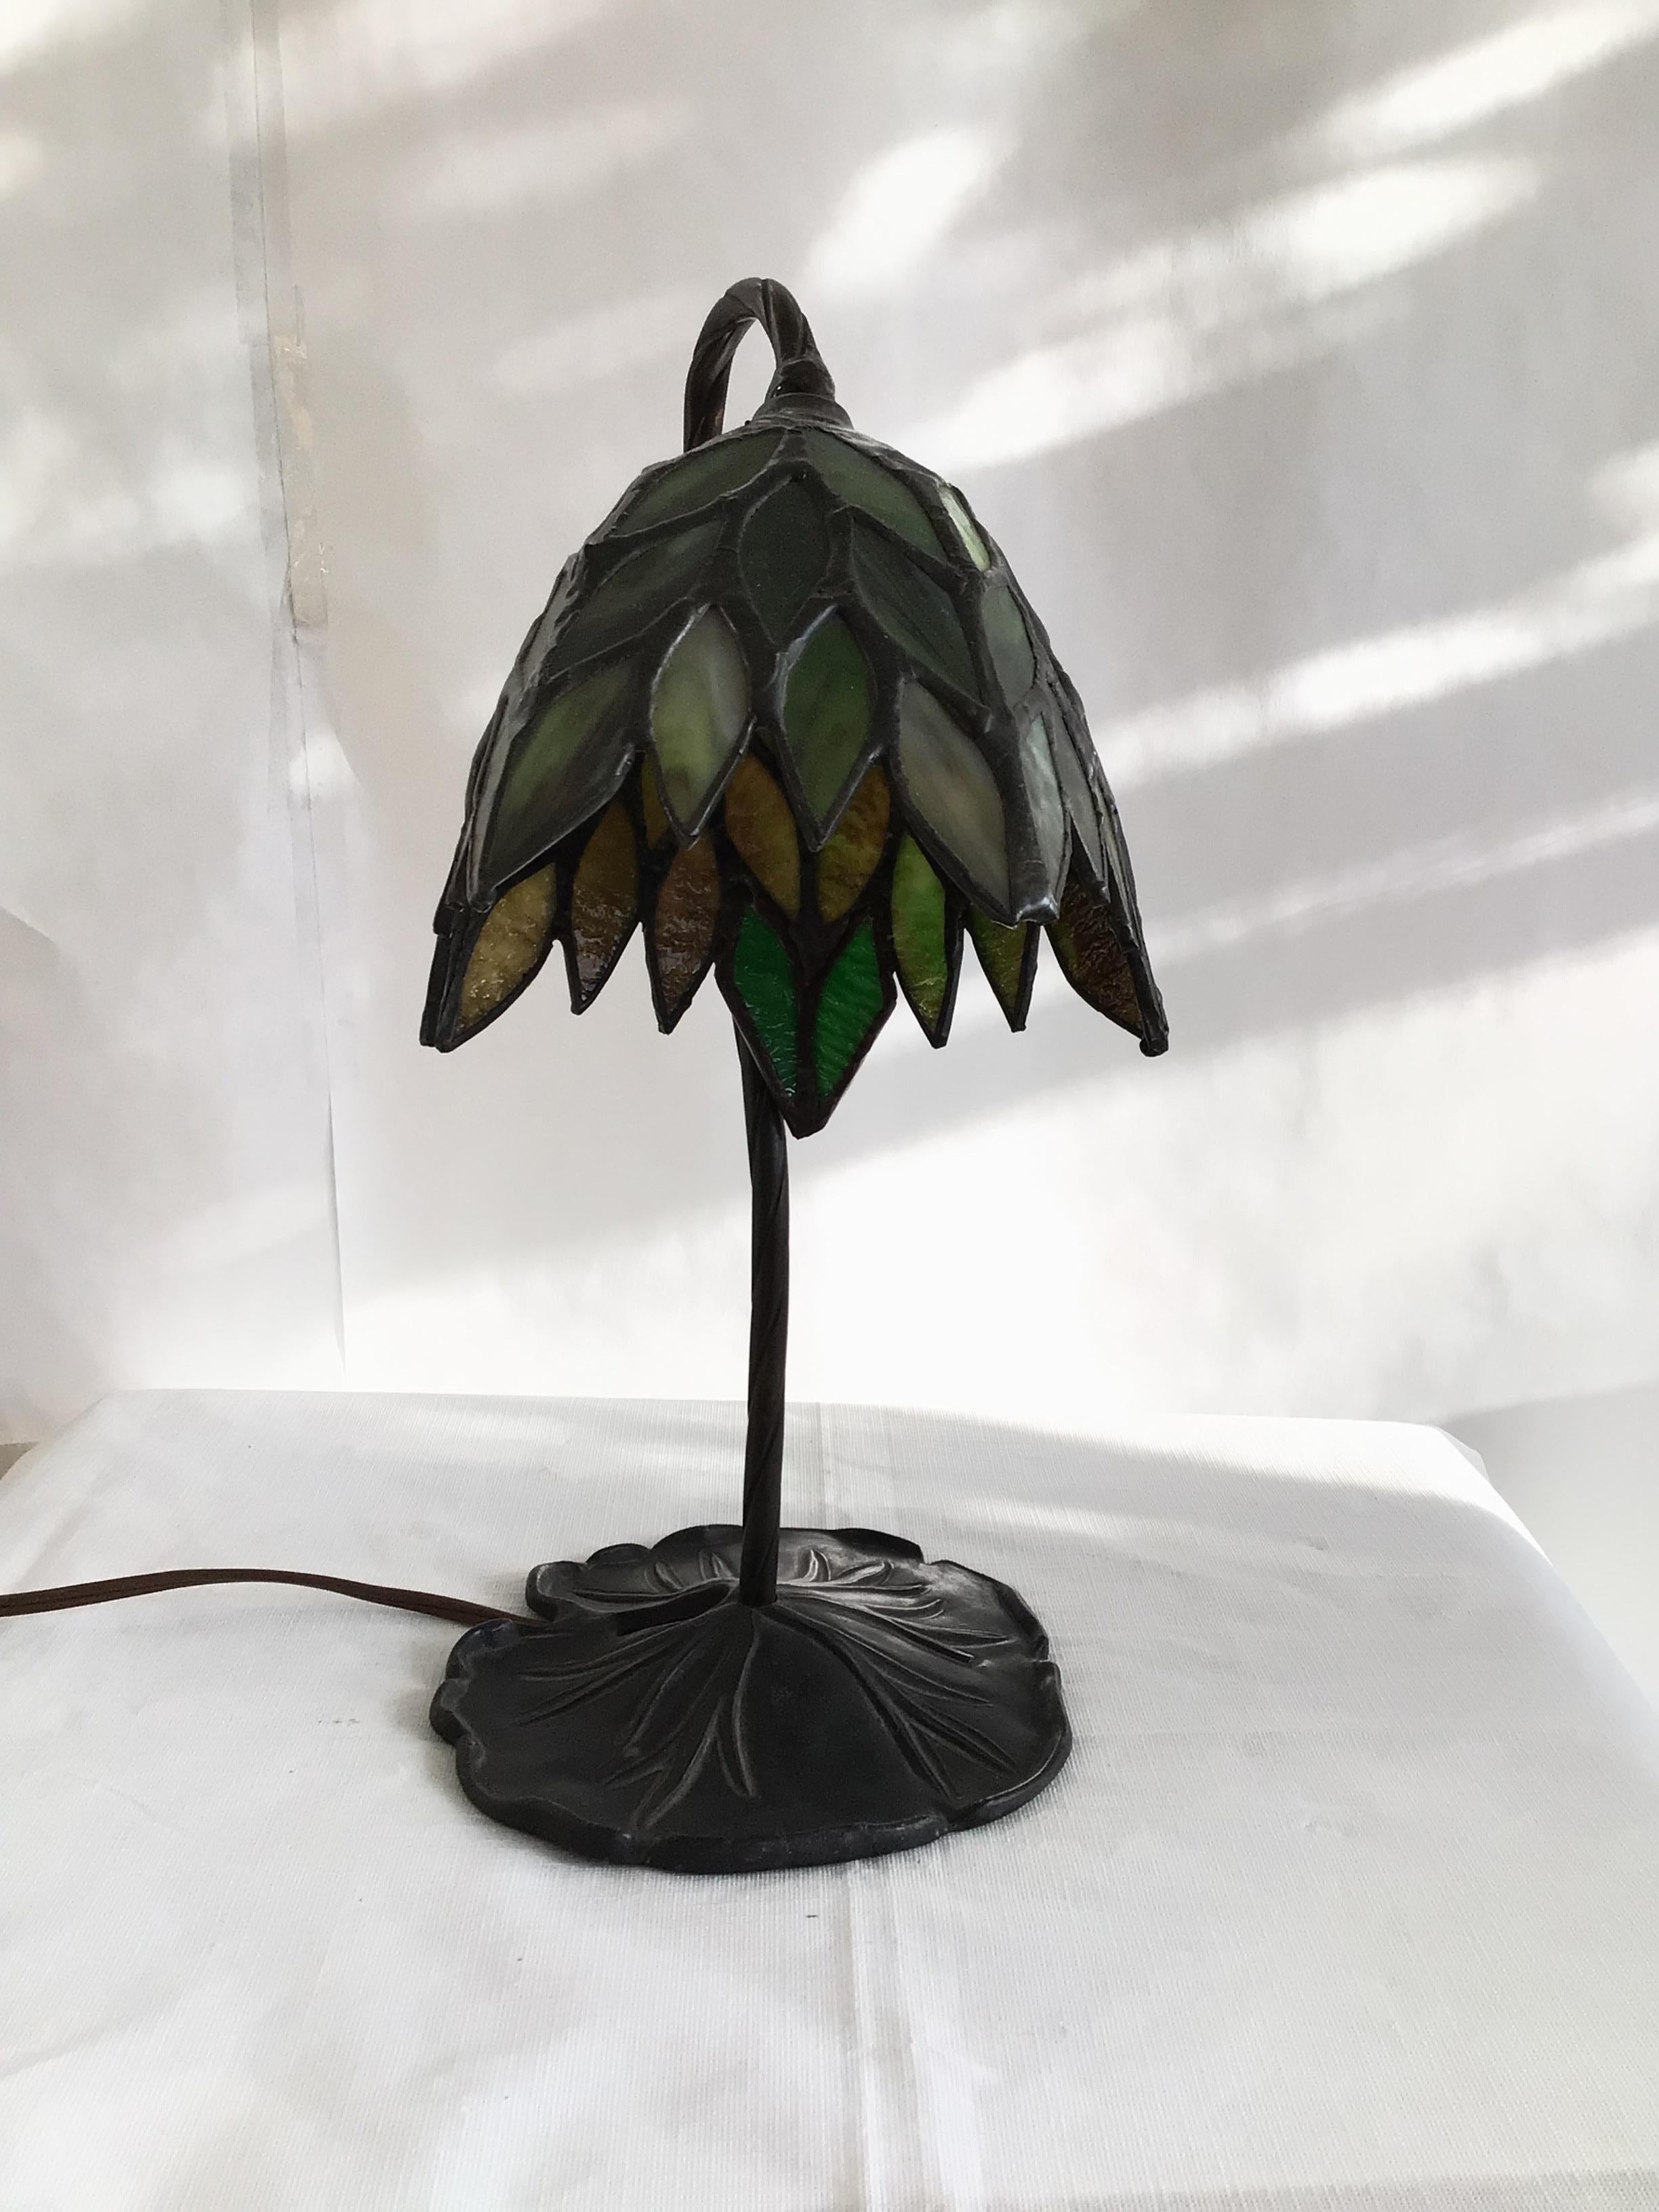 1960er Jahre Bleiverglasung Schreibtischlampe auf einem Lily Pad Metall Basis
Erforderliche Neuverkabelung
Farben: Grün, Schwarz Bronze 